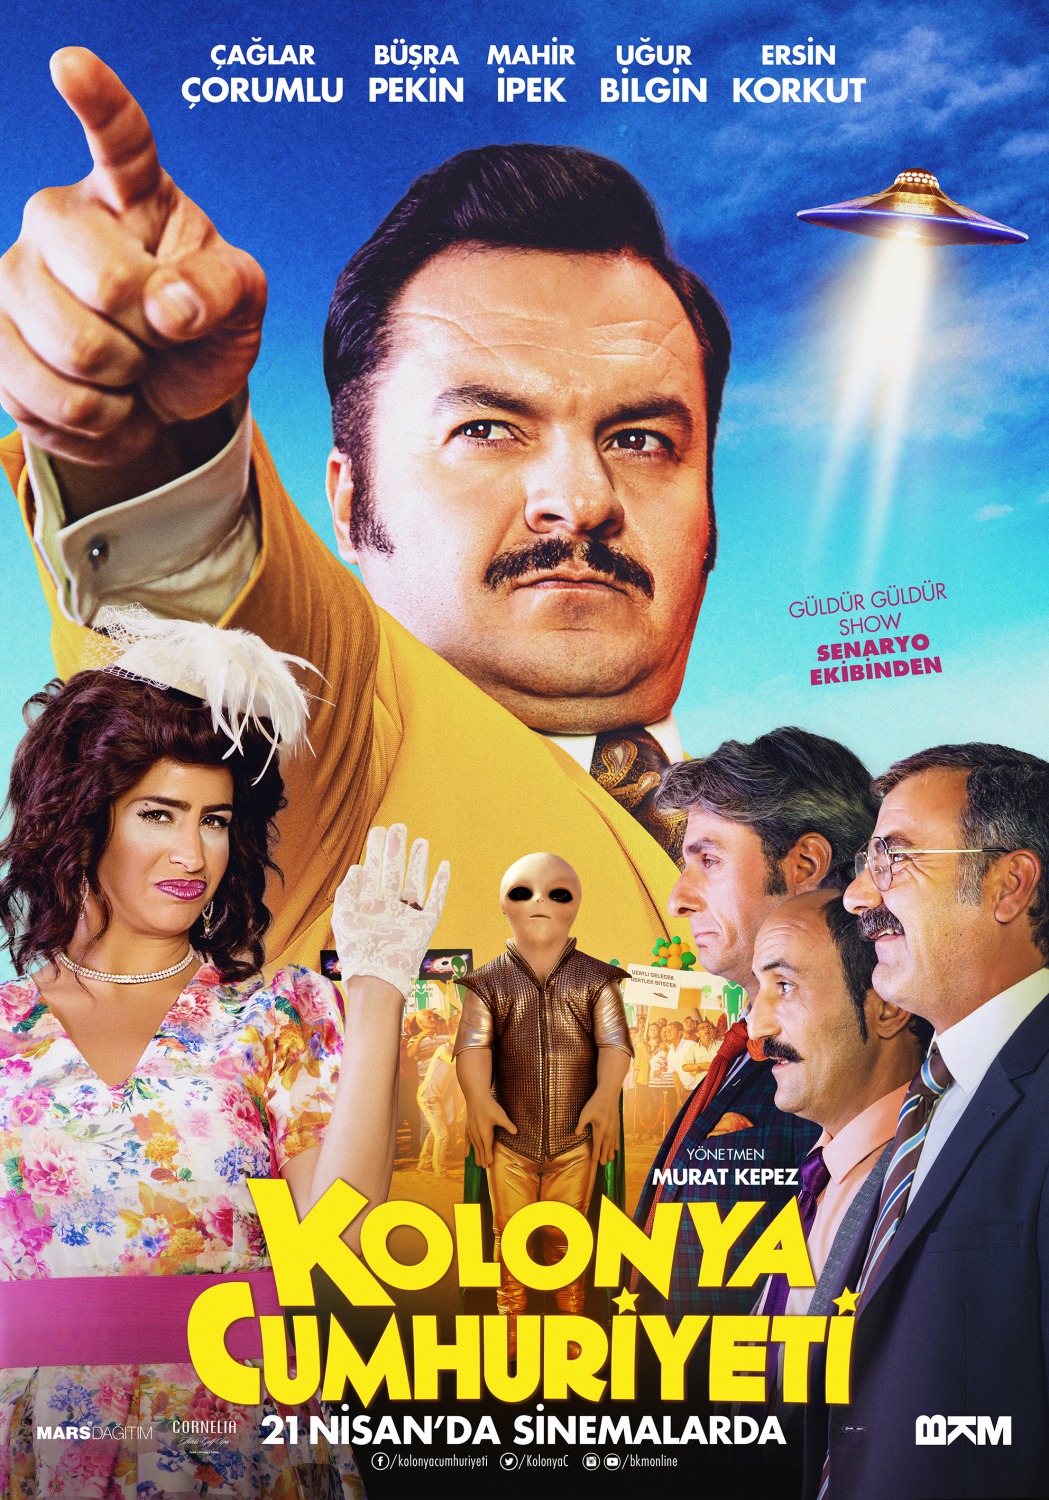 Extra Large Movie Poster Image for Kolonya Cumhuriyeti (#1 of 7)